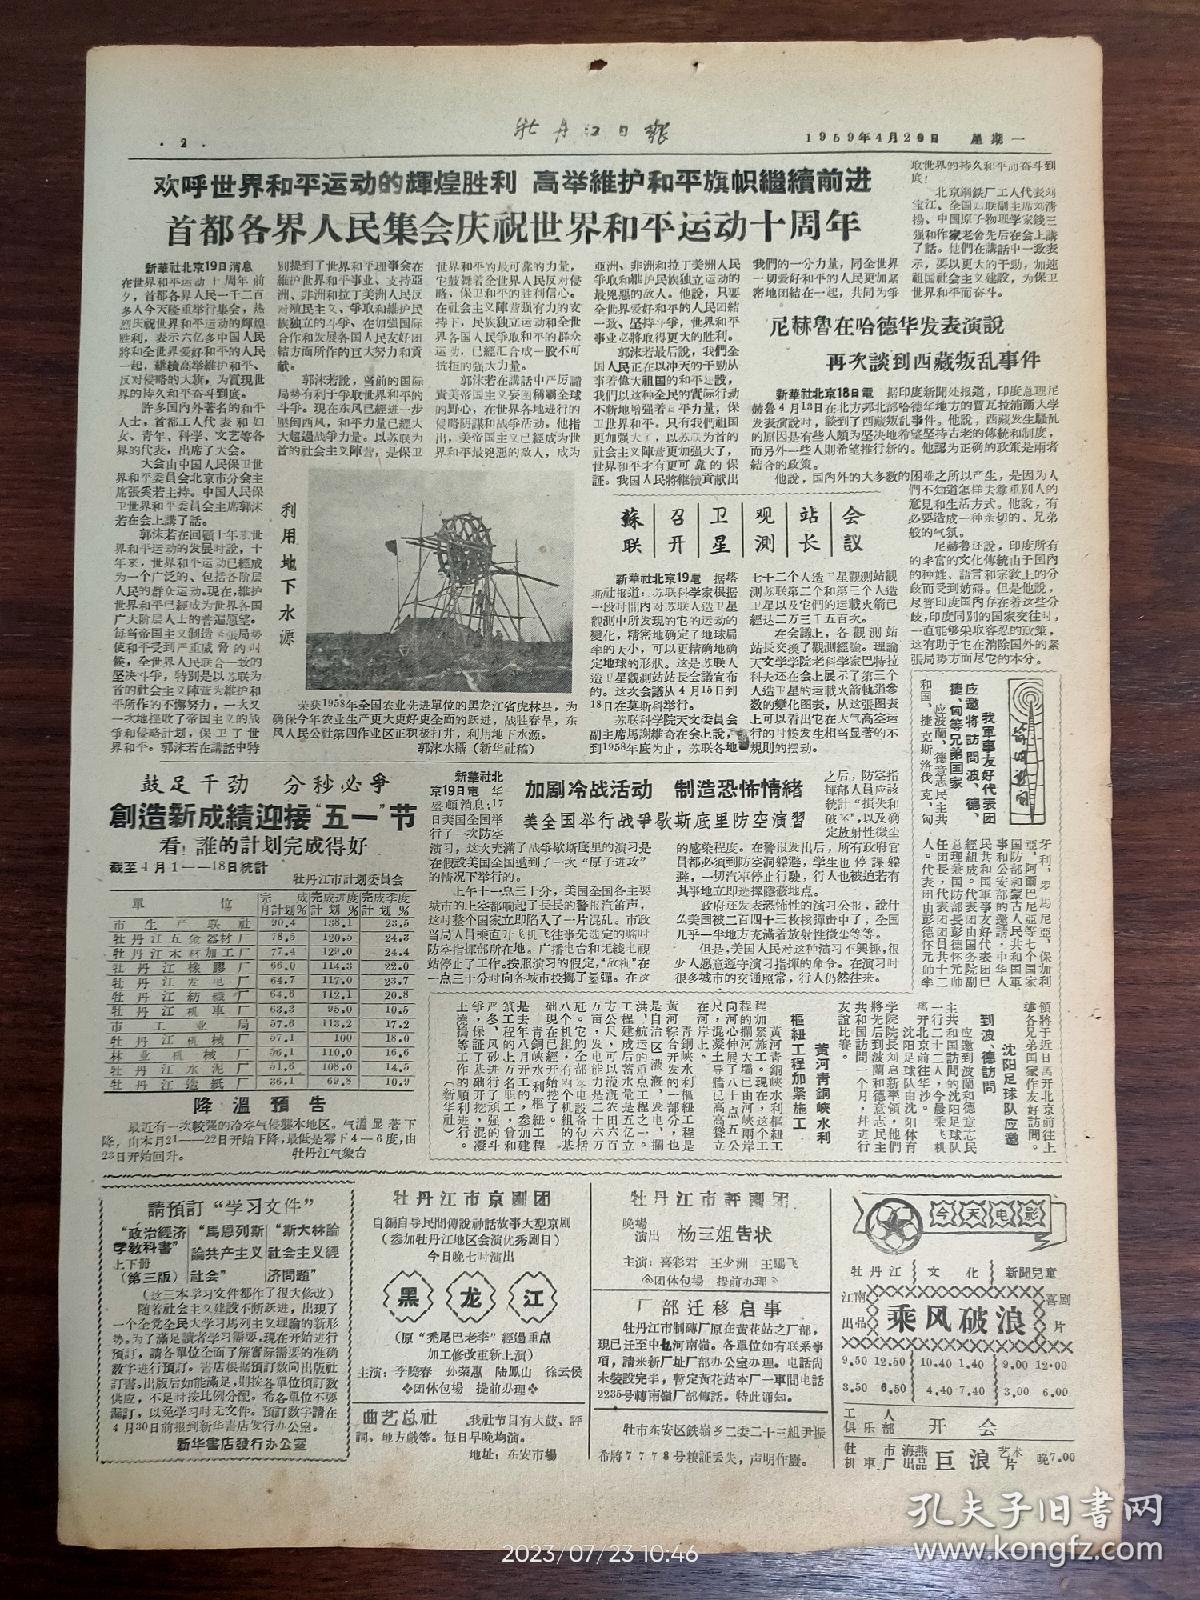 牡丹江日报-首都各界人民集会庆祝世界和平运动十周年。荣获1958年全国农业先进单位的虎林县，积极打井战胜春旱。